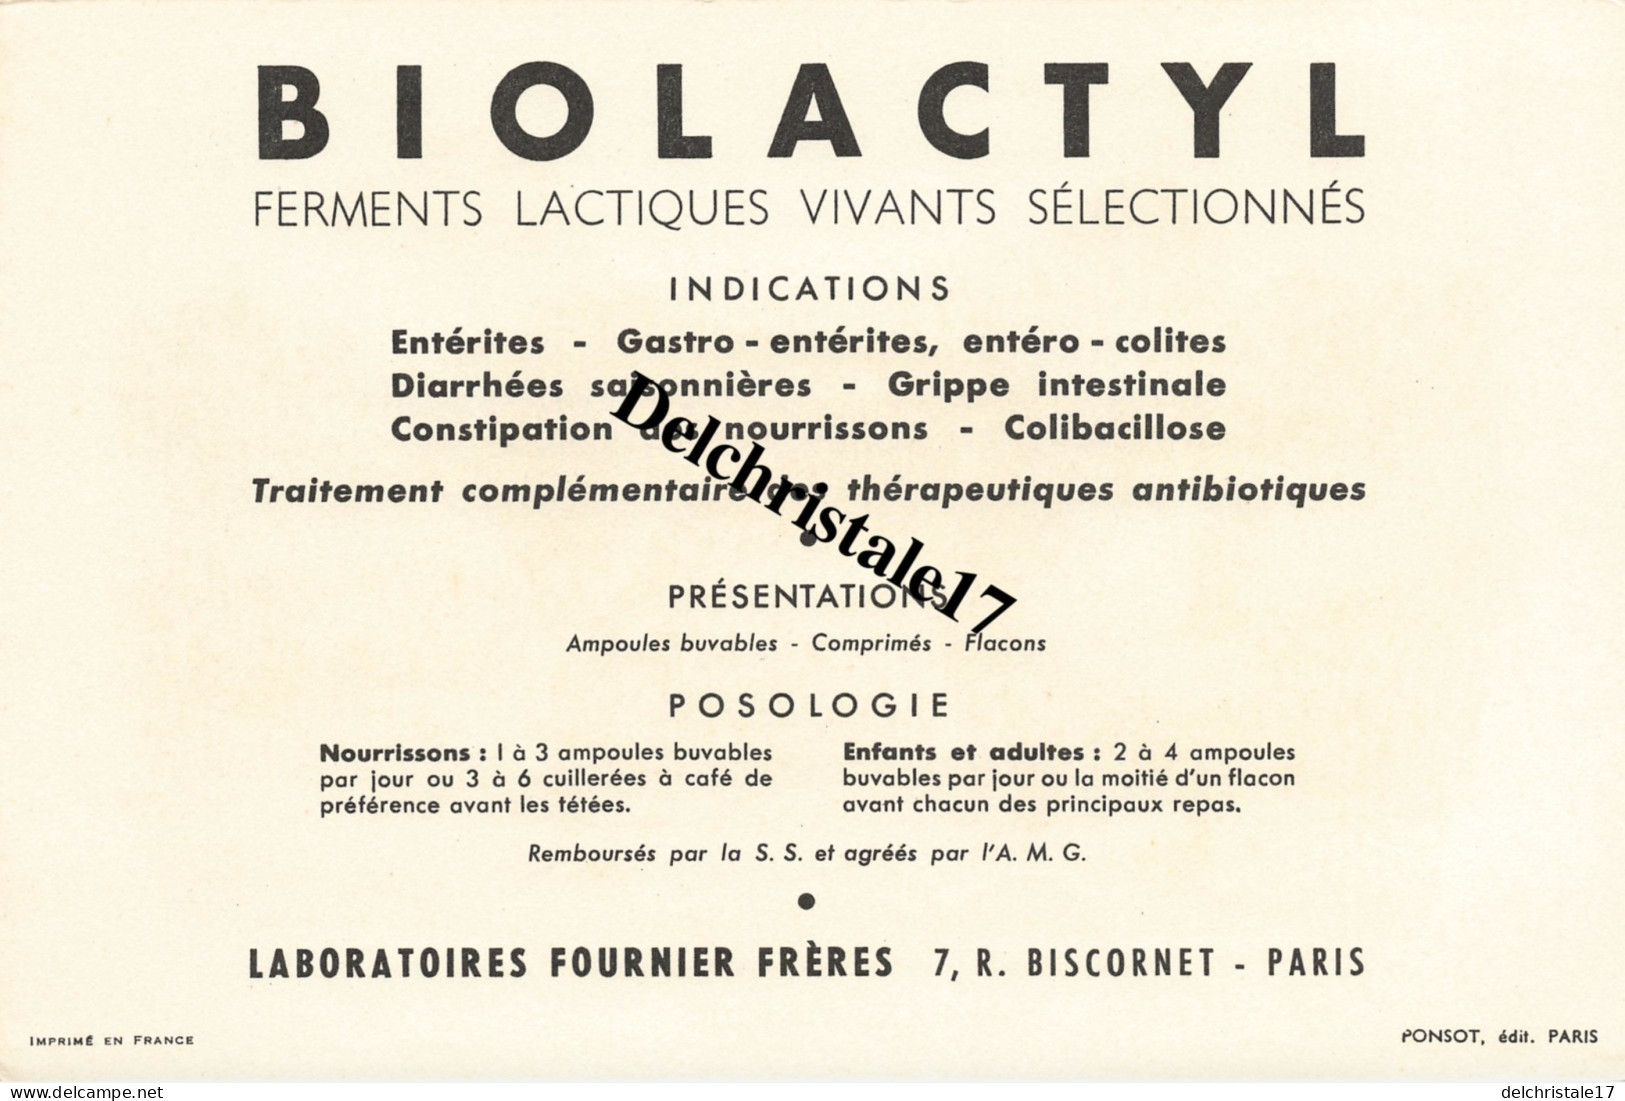 BUVARD 0009 PUBLICITÉ BIOLACTYL LABORATOIRES FOURNIER FRÈRES PARIS - ILLUSTRATION HORBER THÈME CHIEN RETRIEVER - Produits Pharmaceutiques